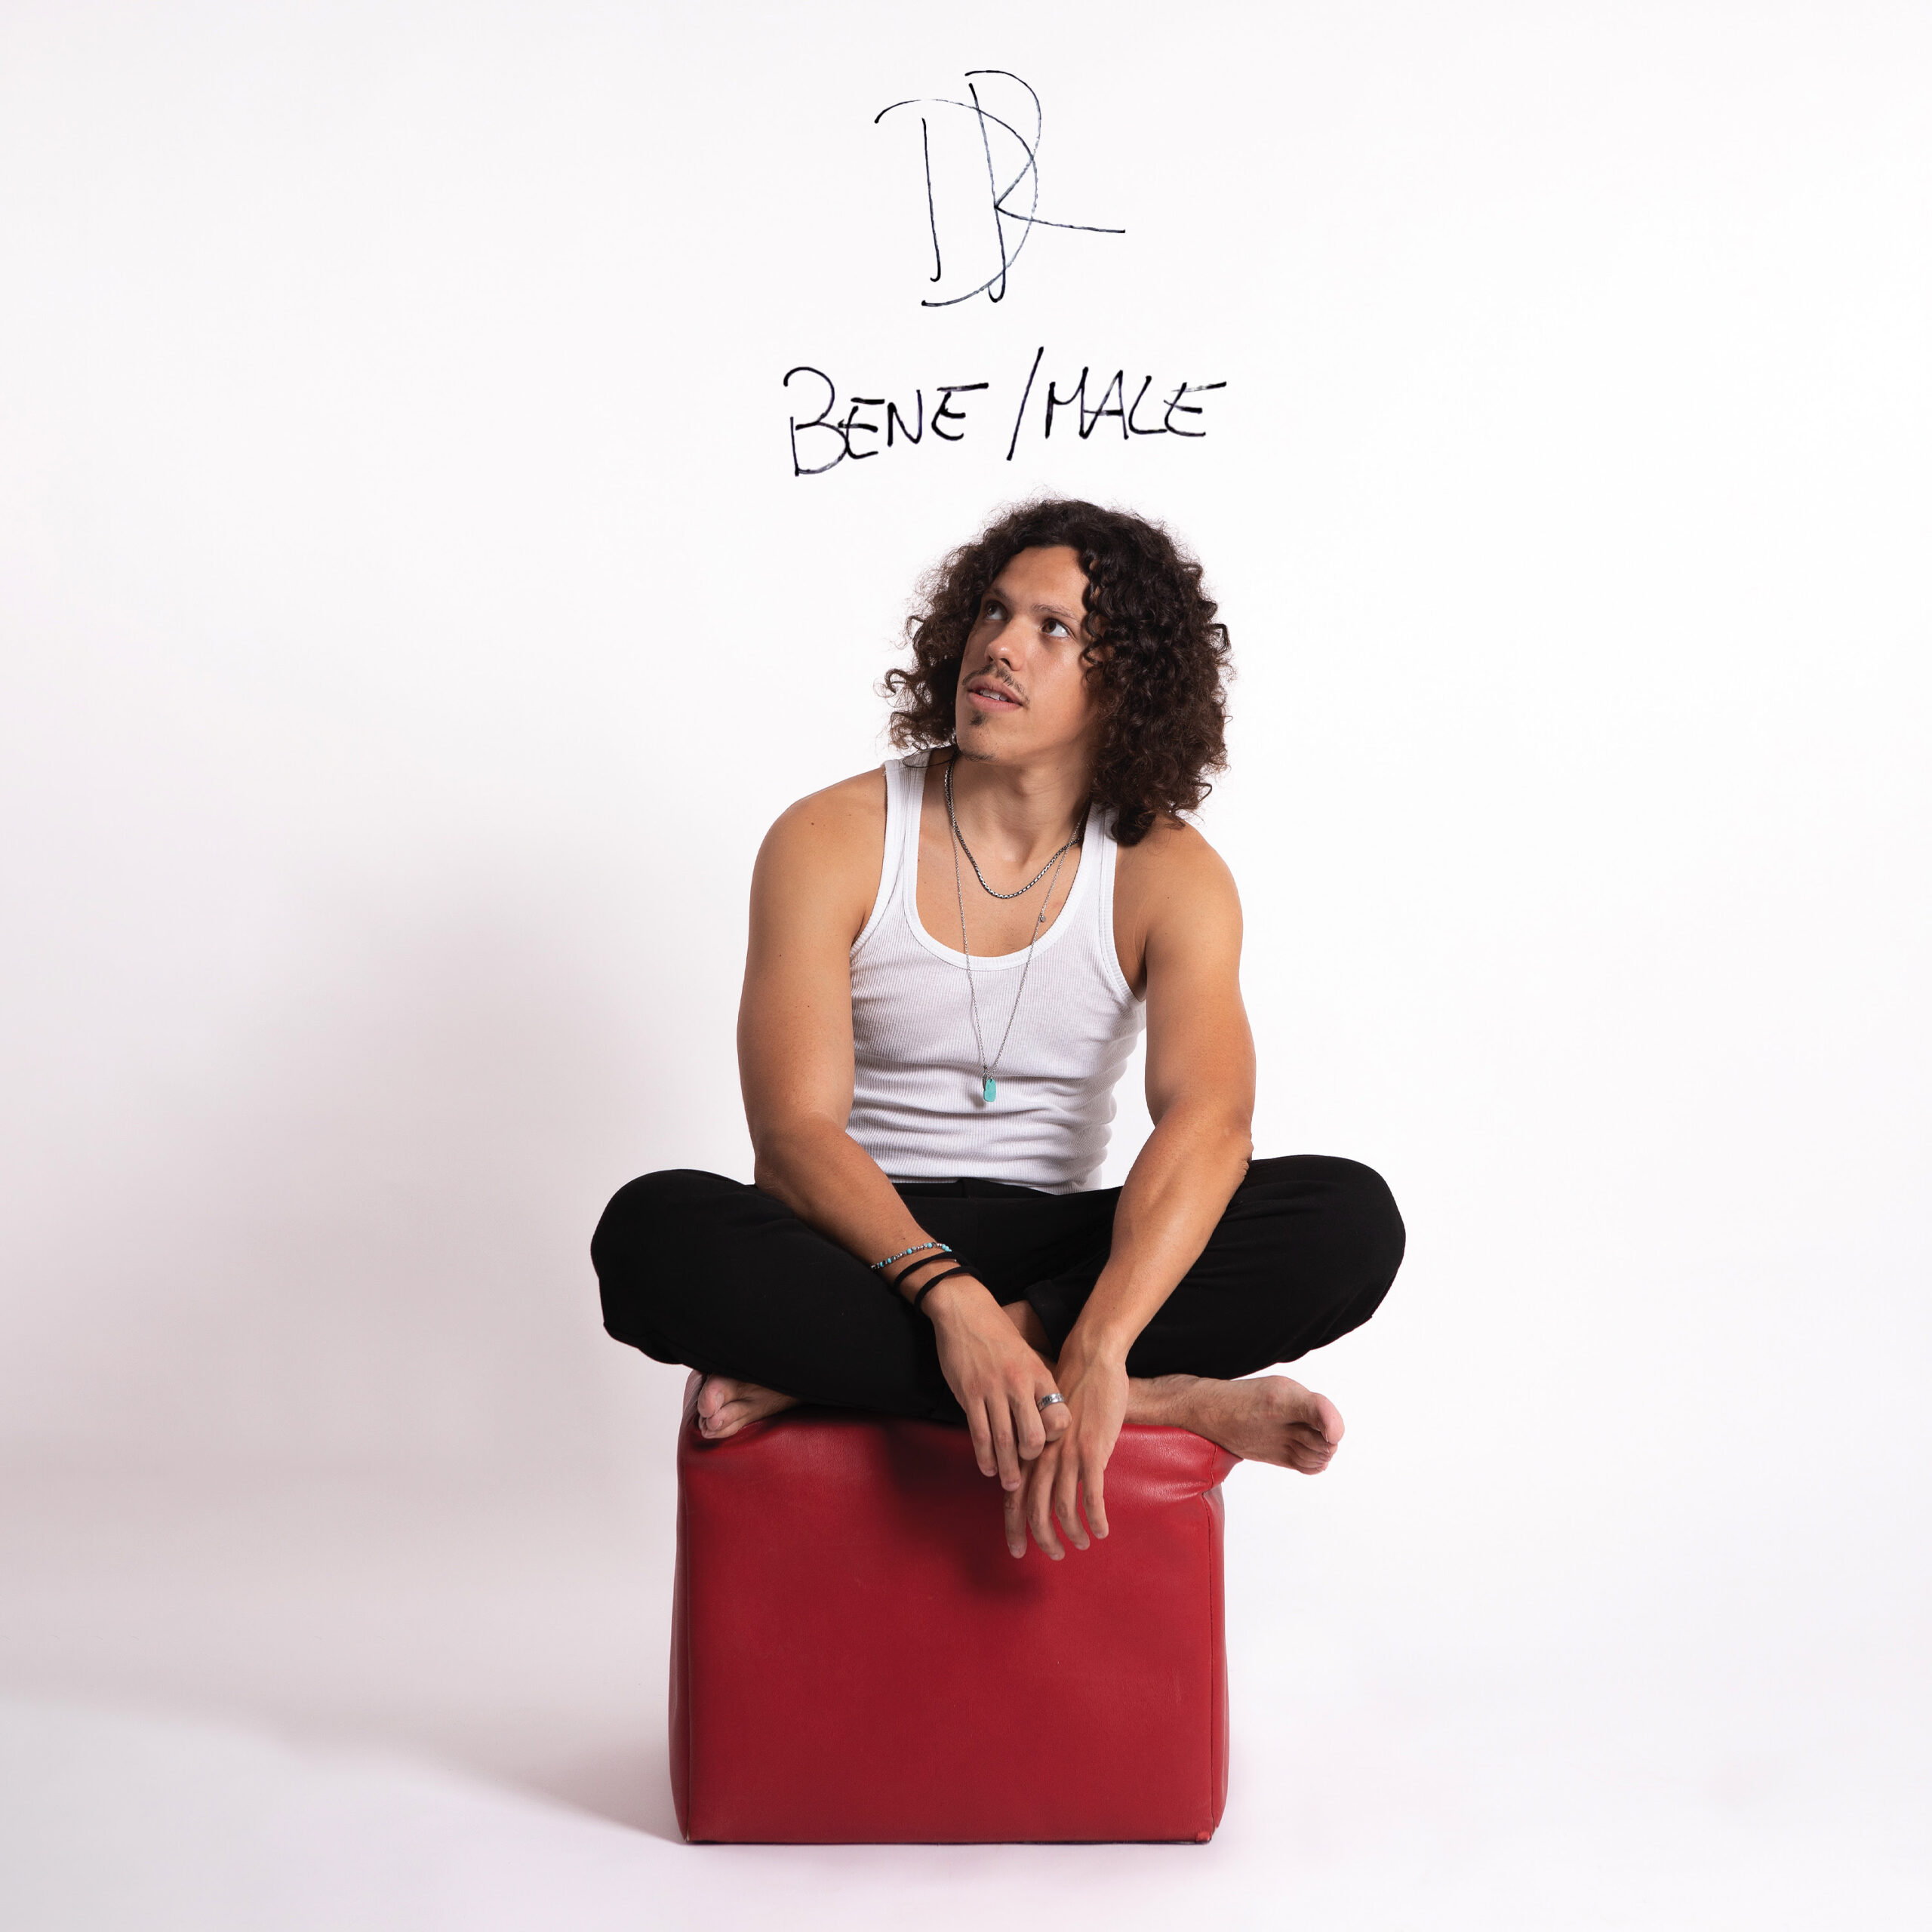 Dal 26 agosto è disponibile in rotazione radiofonica Bene/Male il nuovo singolo di Davide Rossi